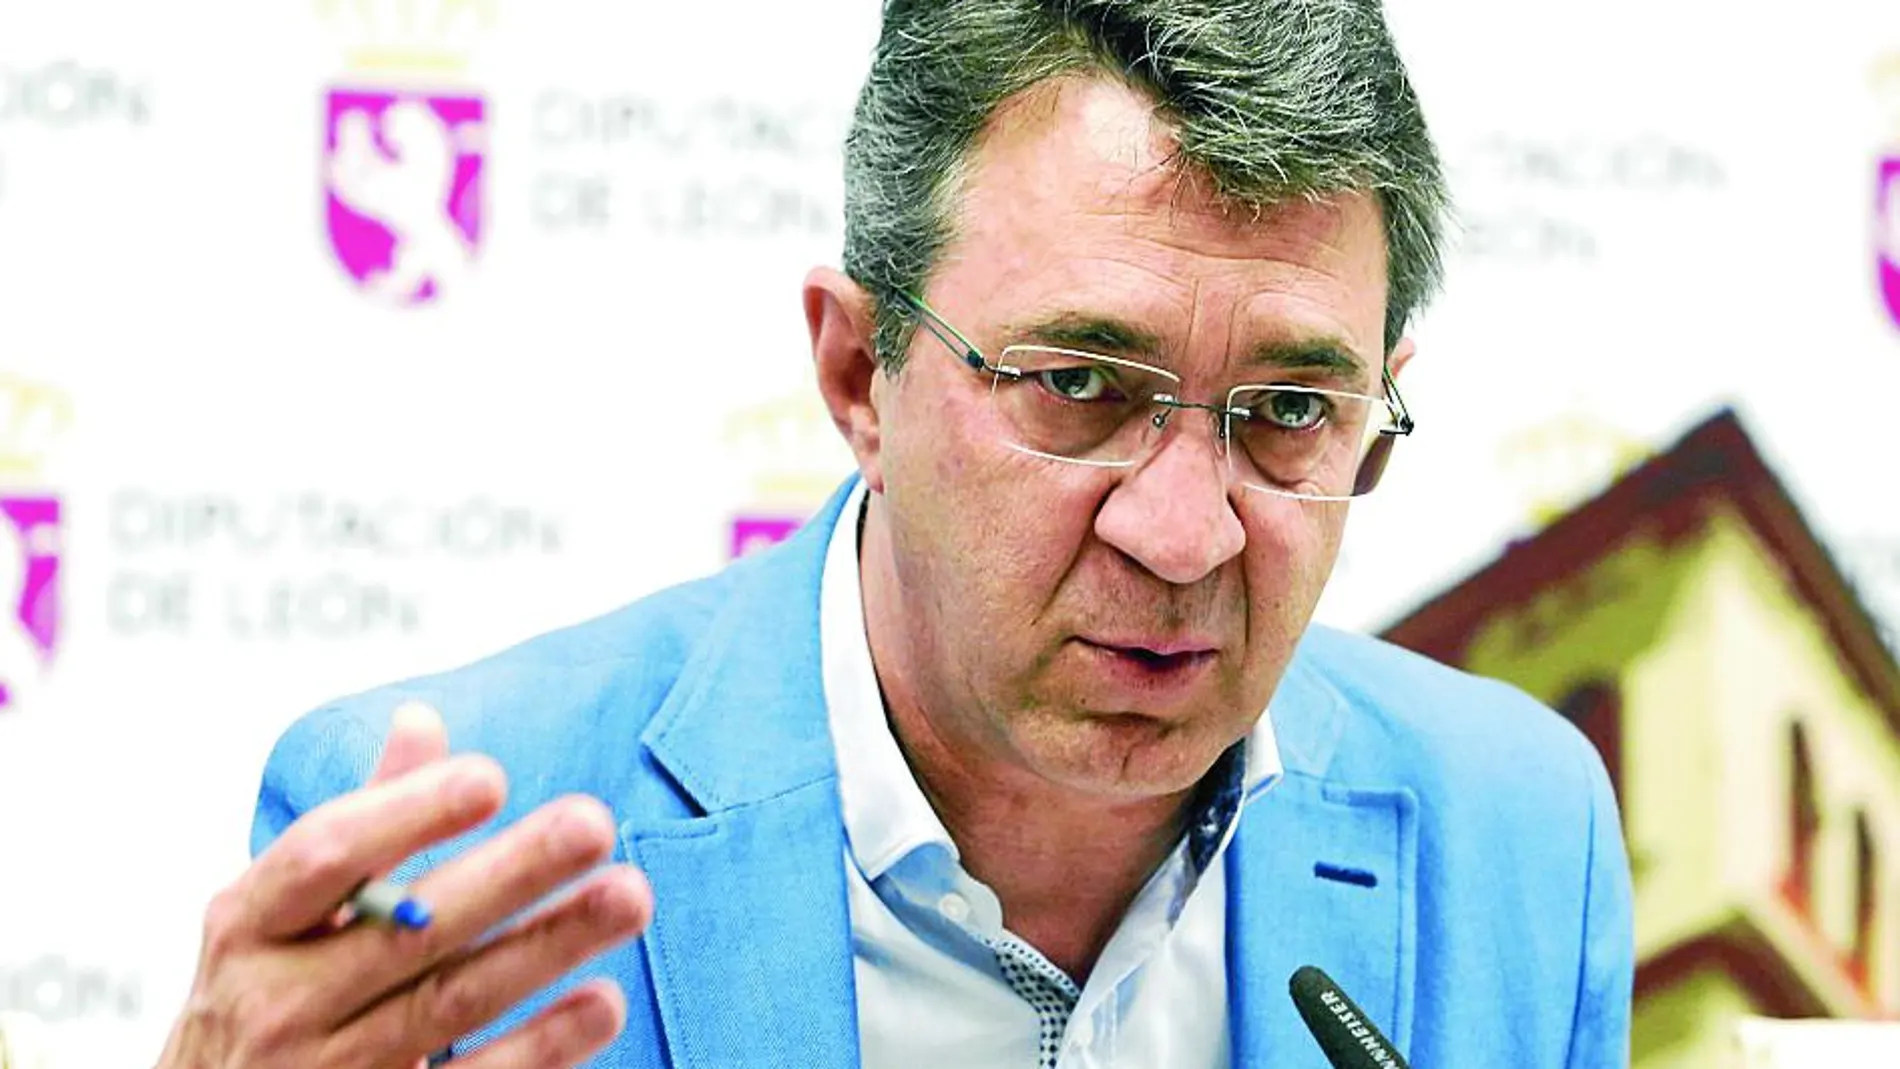 El presidente de la Diputación de León, Juan Martínez Majo, presenta el plan que pretende dinamizar el medio rural de la provincia y crear no menos de trescientos empleos en la ejecución de las distintas obras que se lleven a cabo